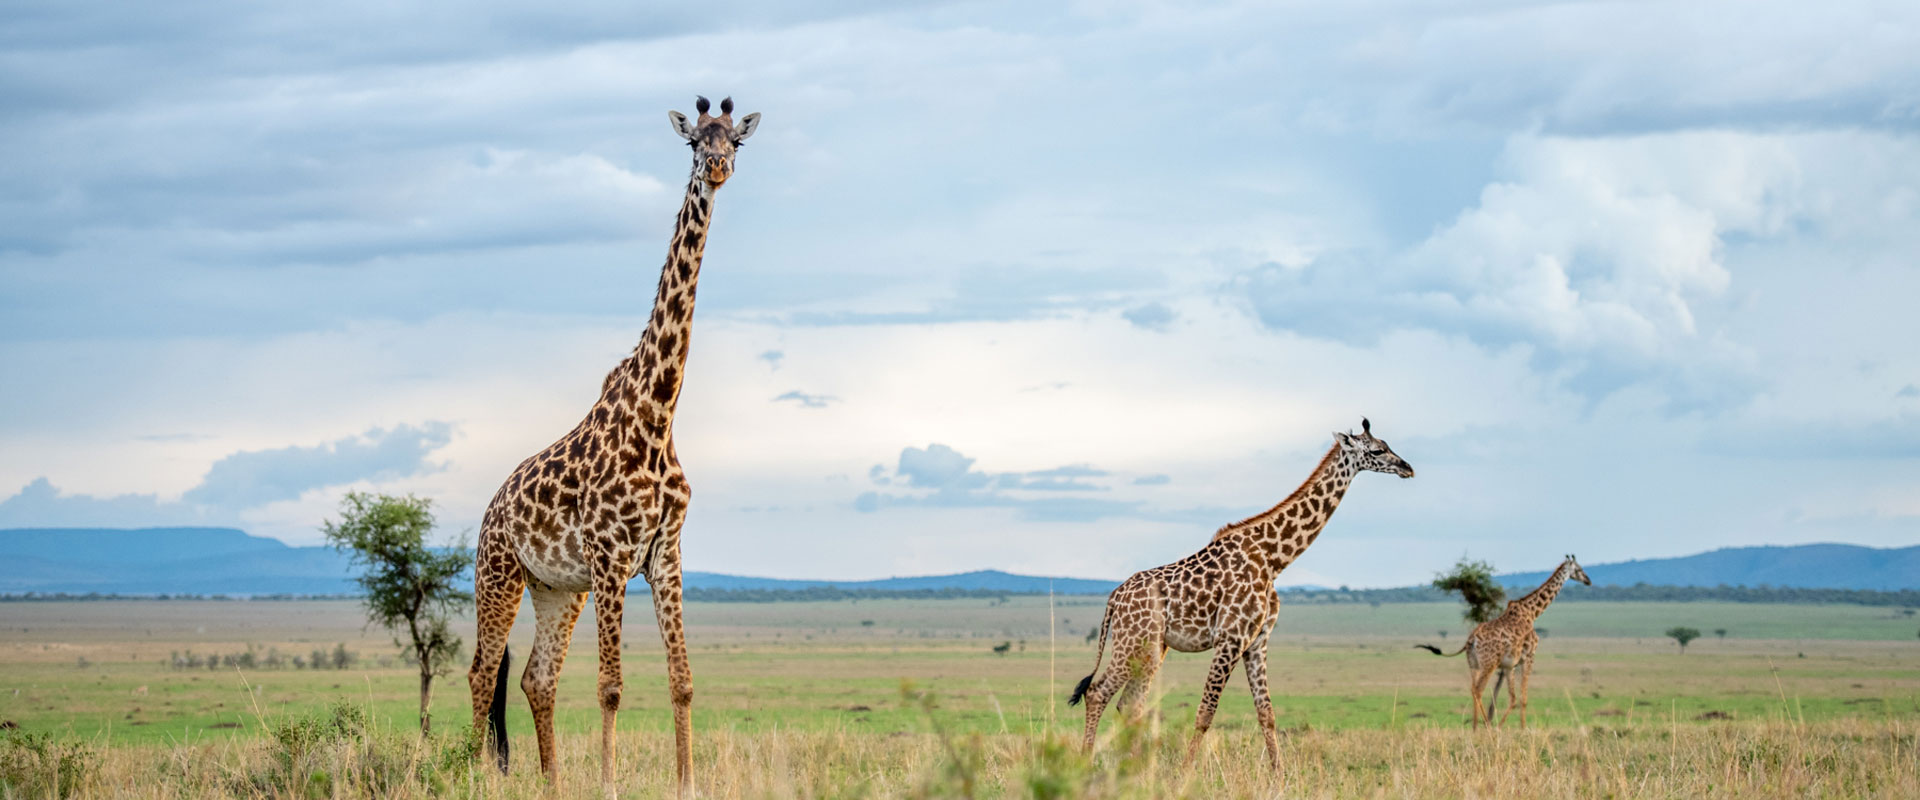 Serengeti Safari Migration Camp